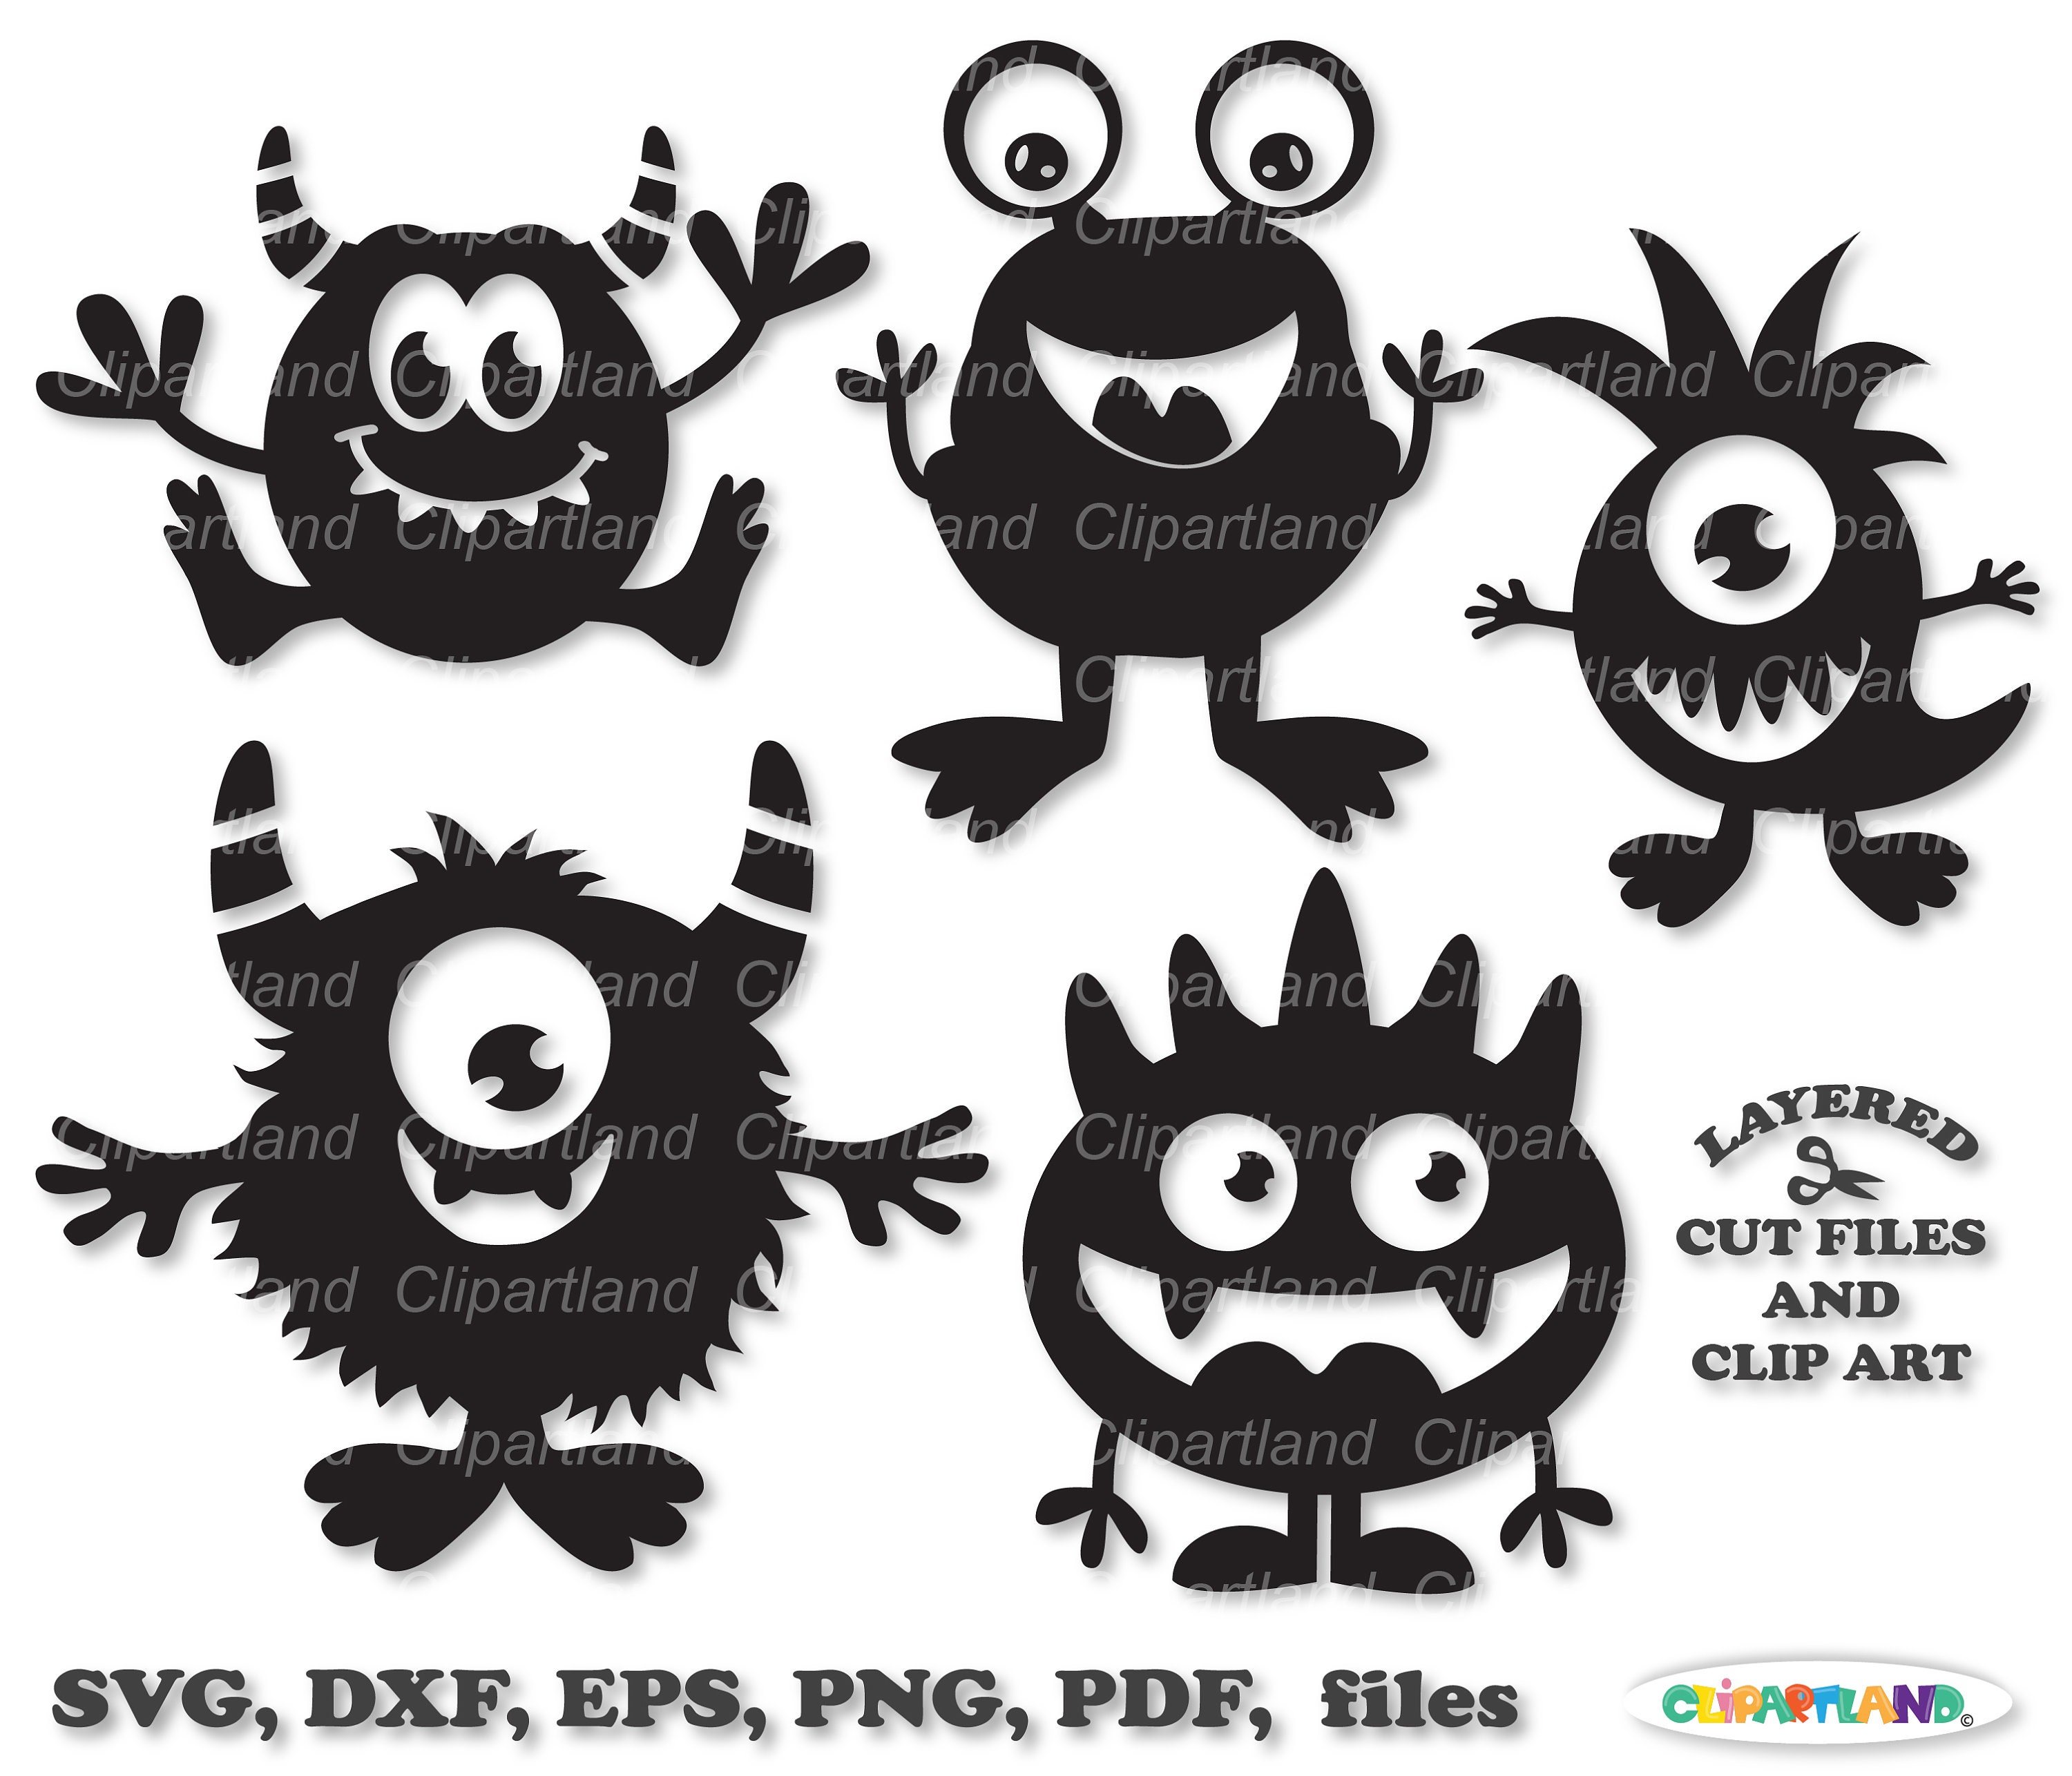 Singing Monsters SVG, My Singing Monsters Wubbox Vintage SVG - WildSvg